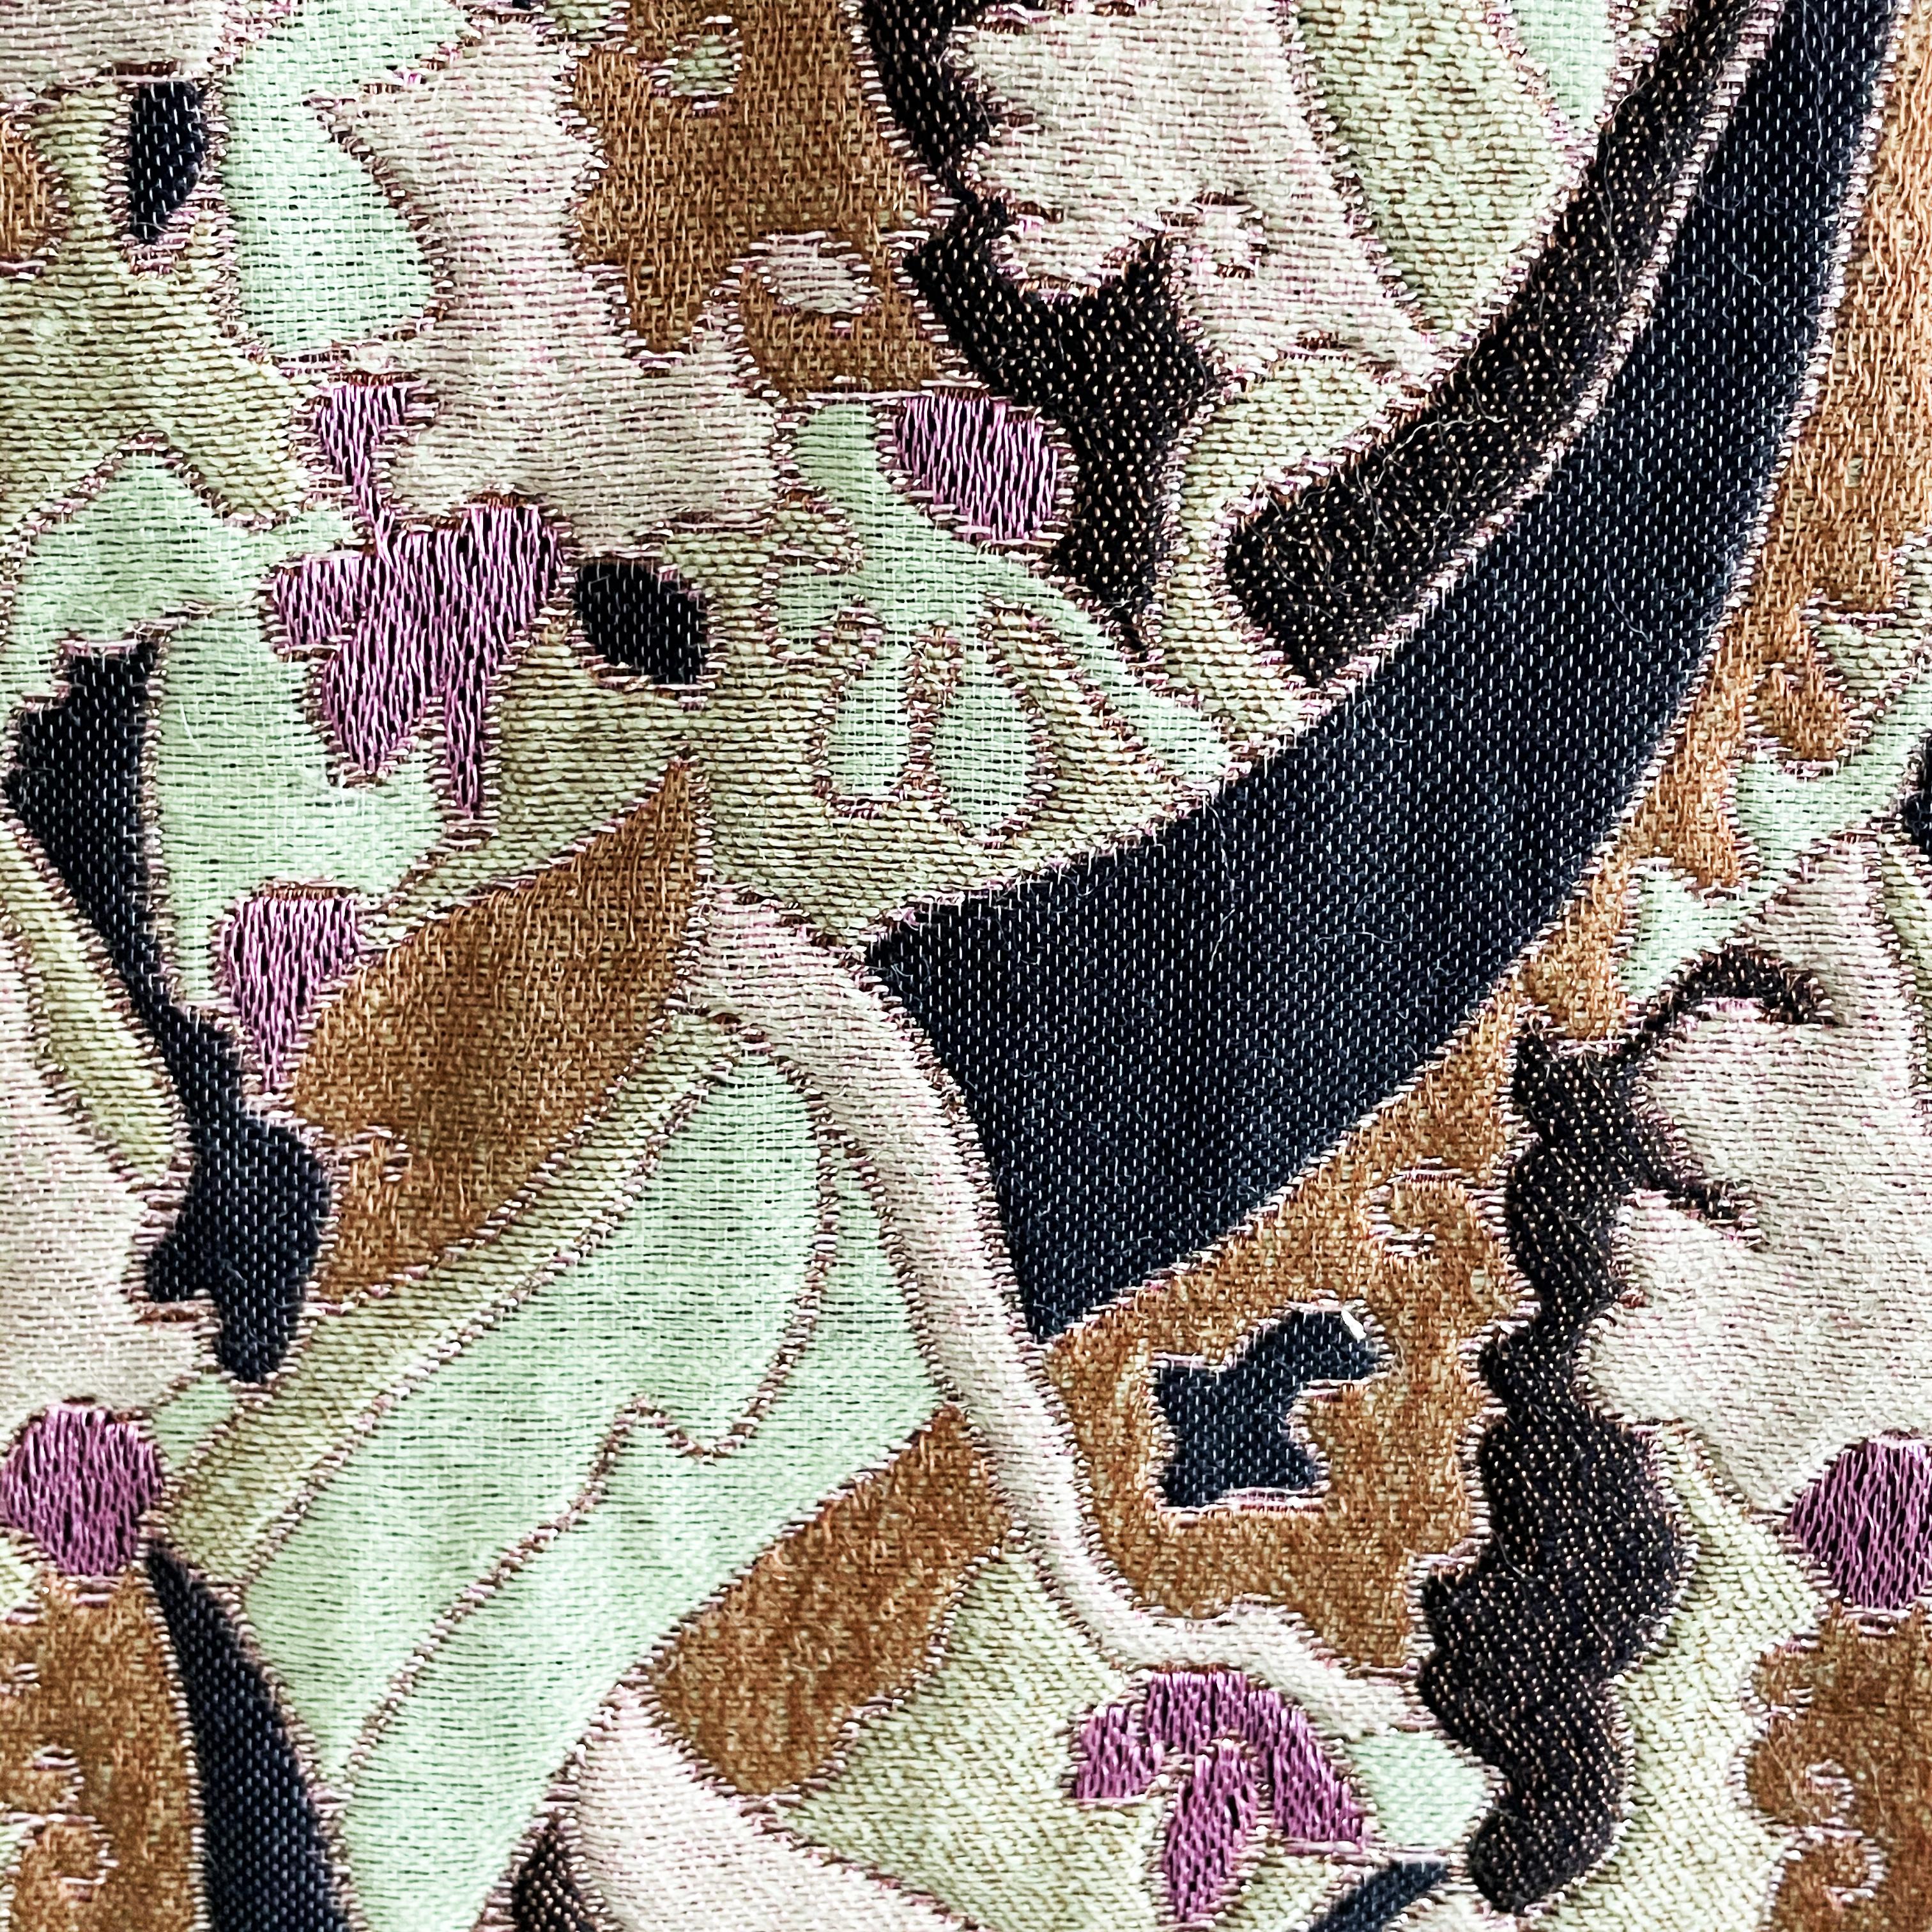 Manteau ou robe en brocart vintage par James Galanos pour Amelia Gray Boutique Beverly Hilles, probablement réalisé à la fin des années 60. 

Réalisé dans un incroyable brocart tapisserie dans des tons vert pâle, lavande, marron et noir anthracite,